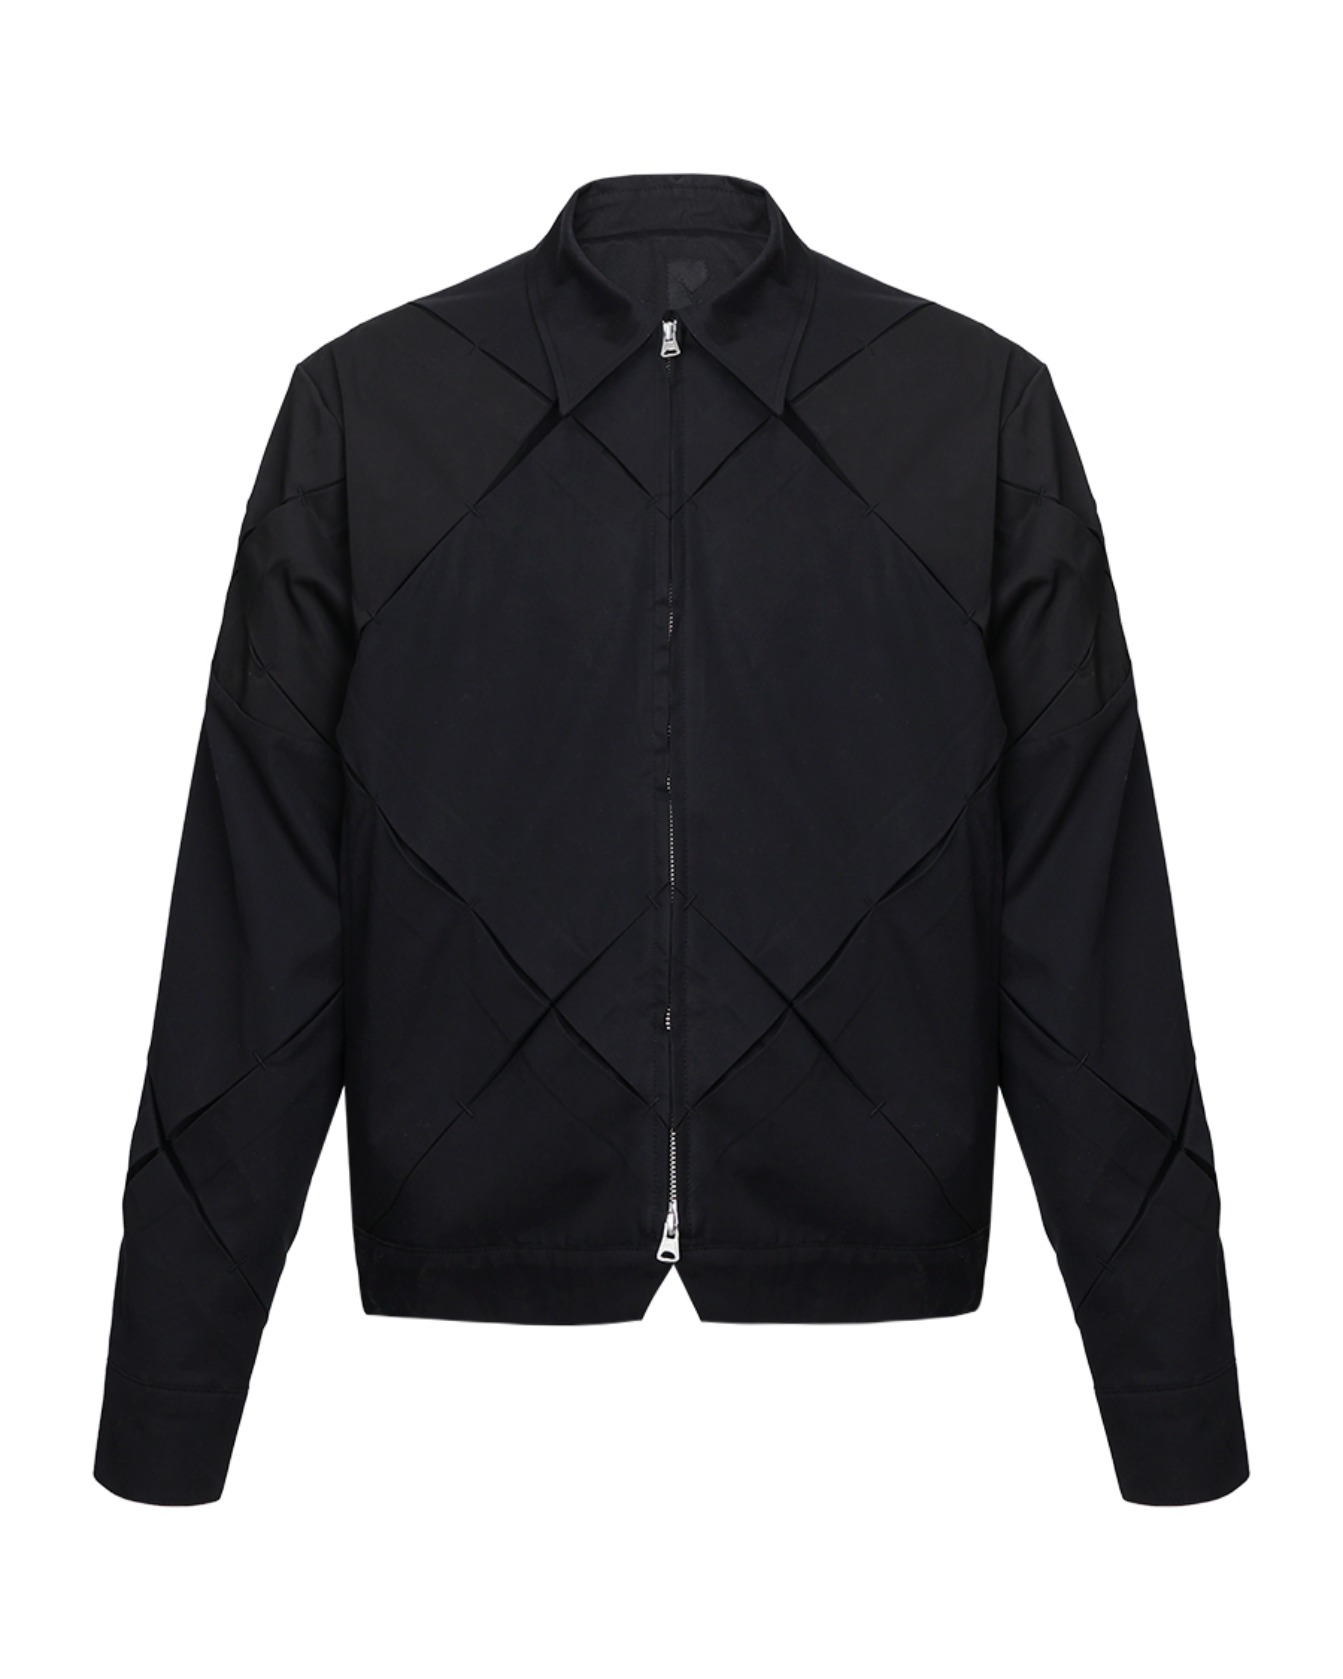 Origami circle jacket(black)